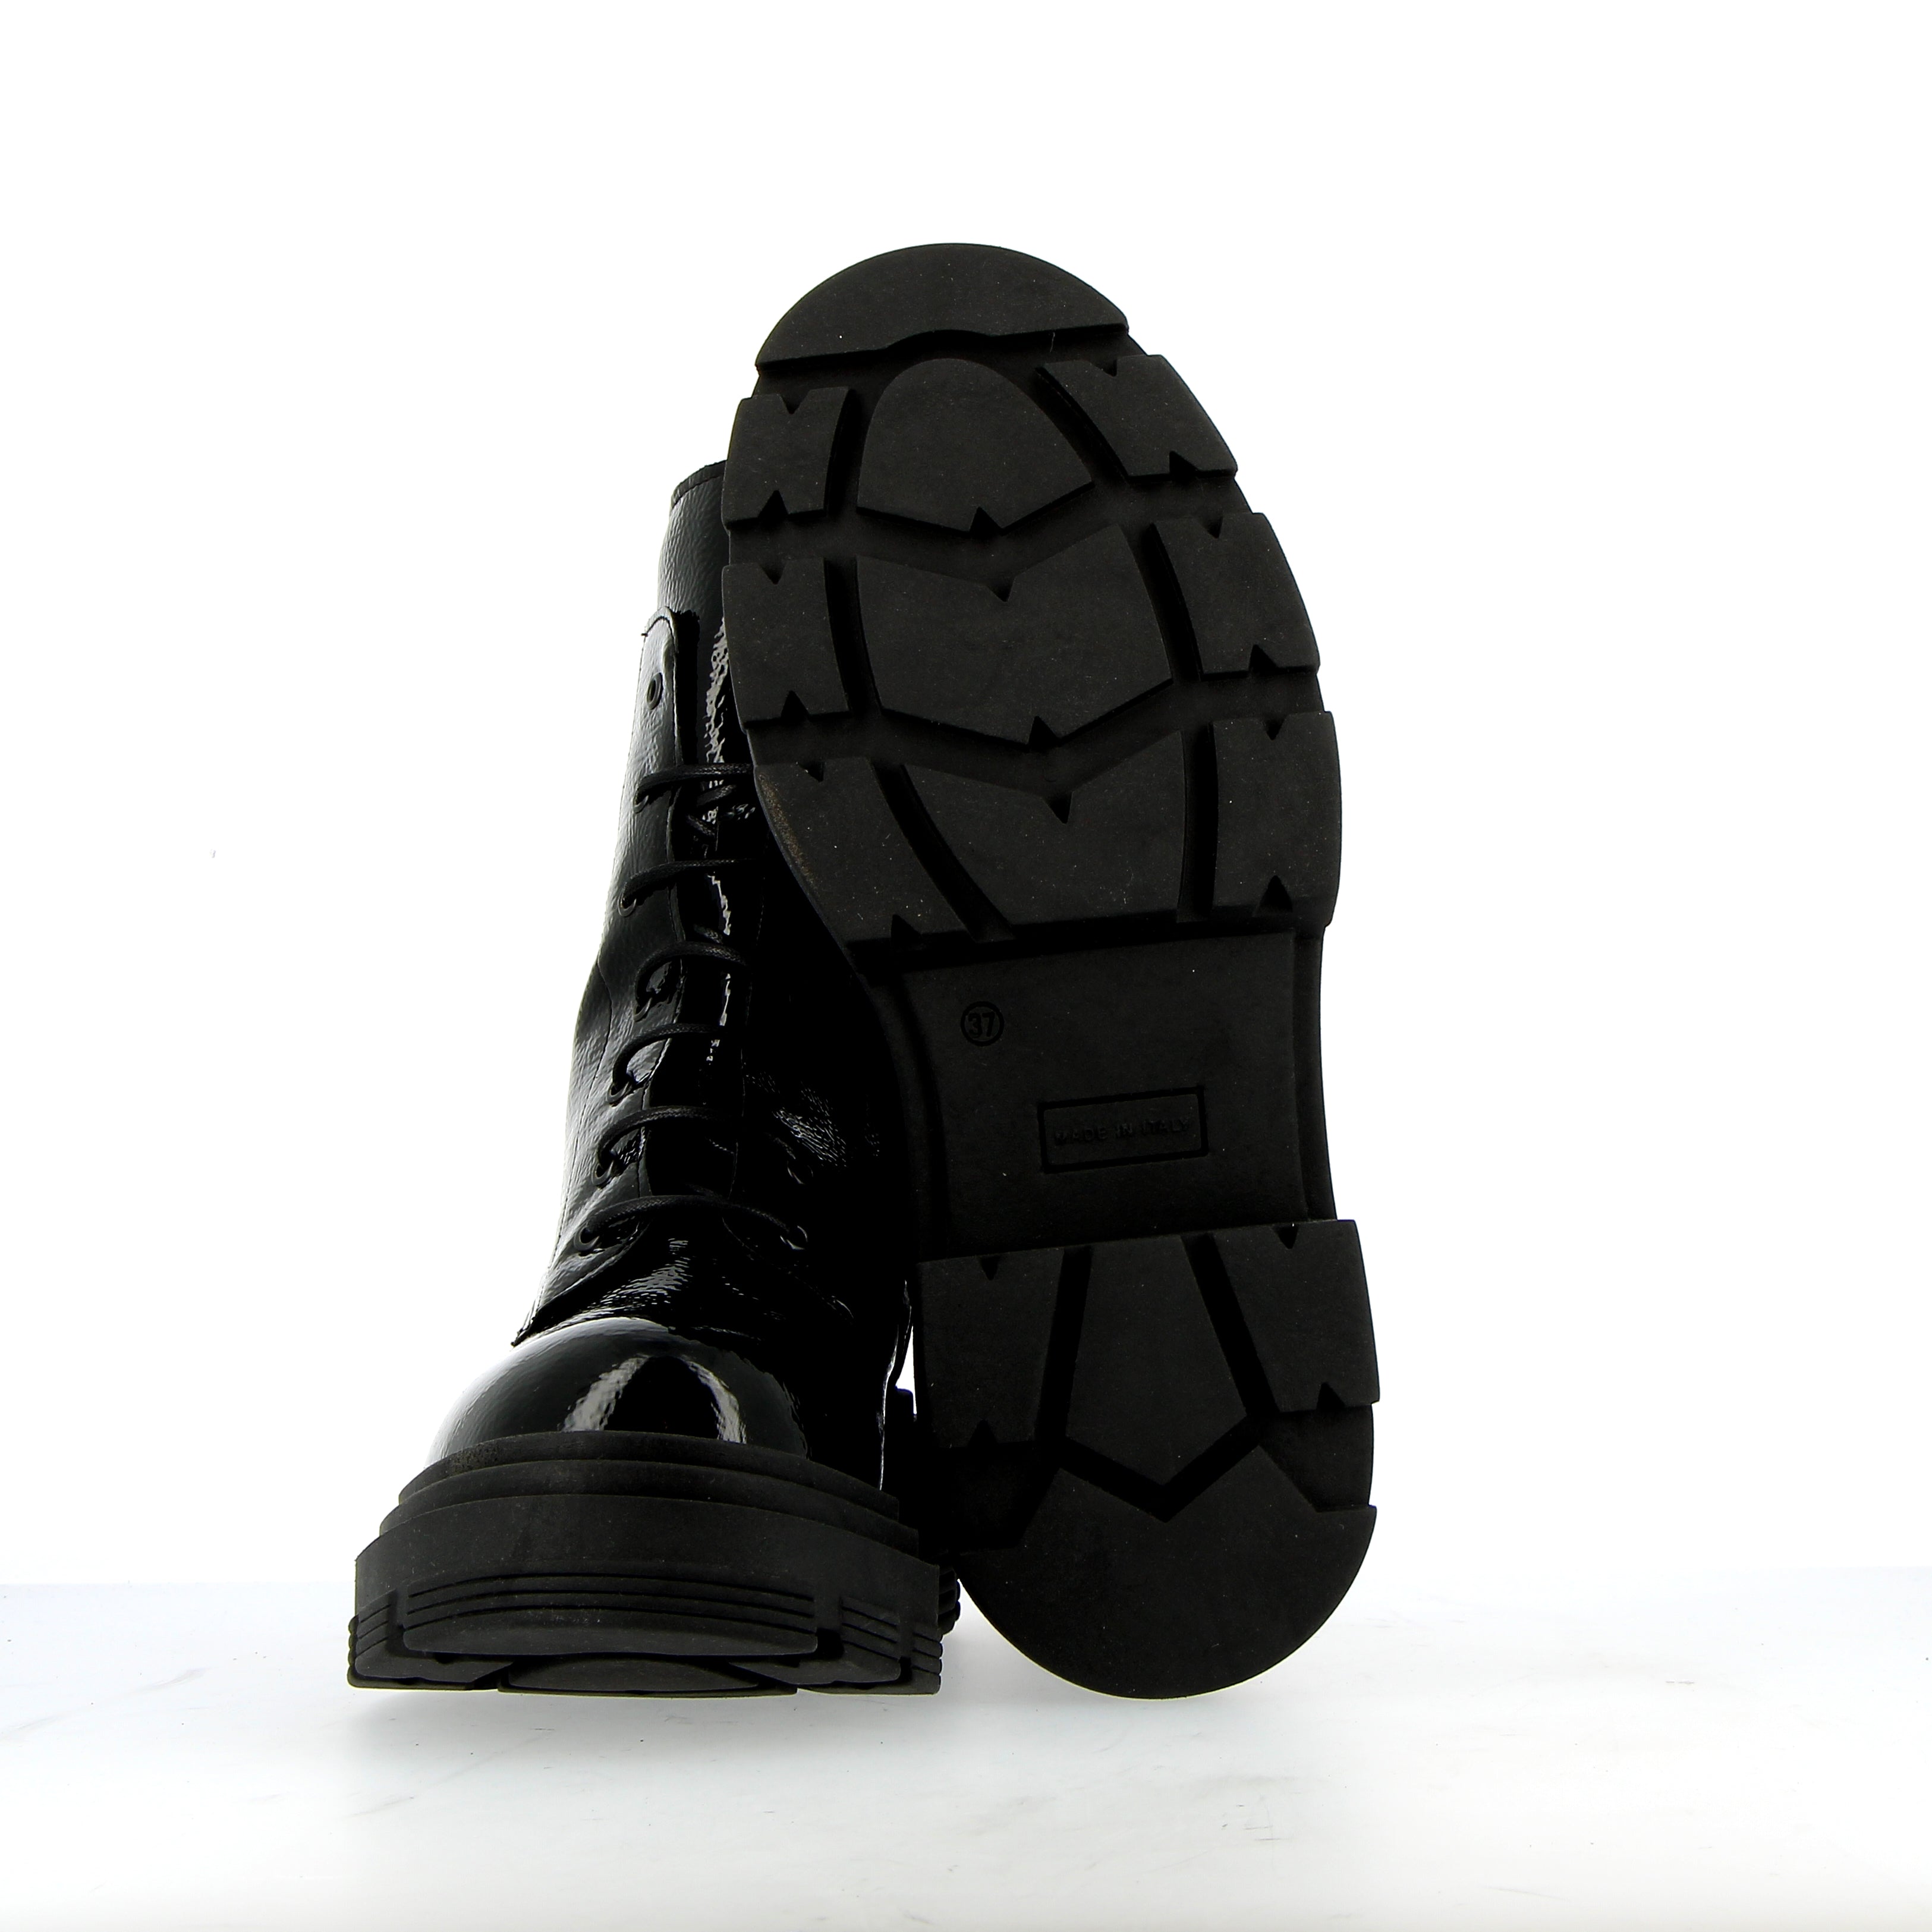 Black laquered combat boot